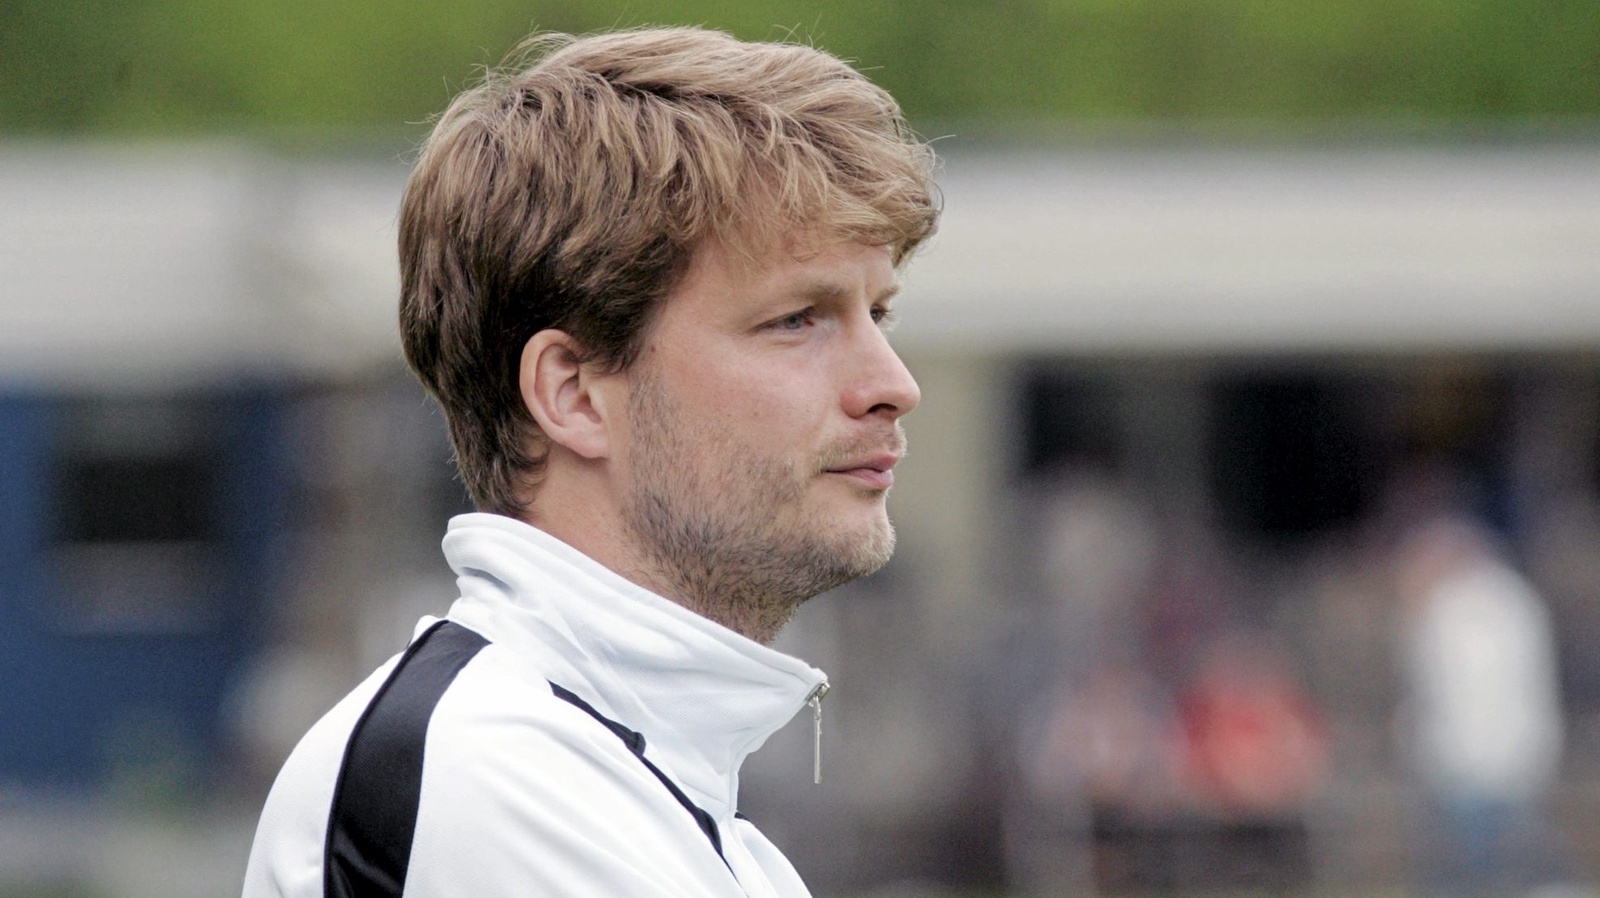 Julius Sjödahl gör comeback som tränare på seniornivå i Rökes damlag.
Foto: STEFAN SANDSTRÖM